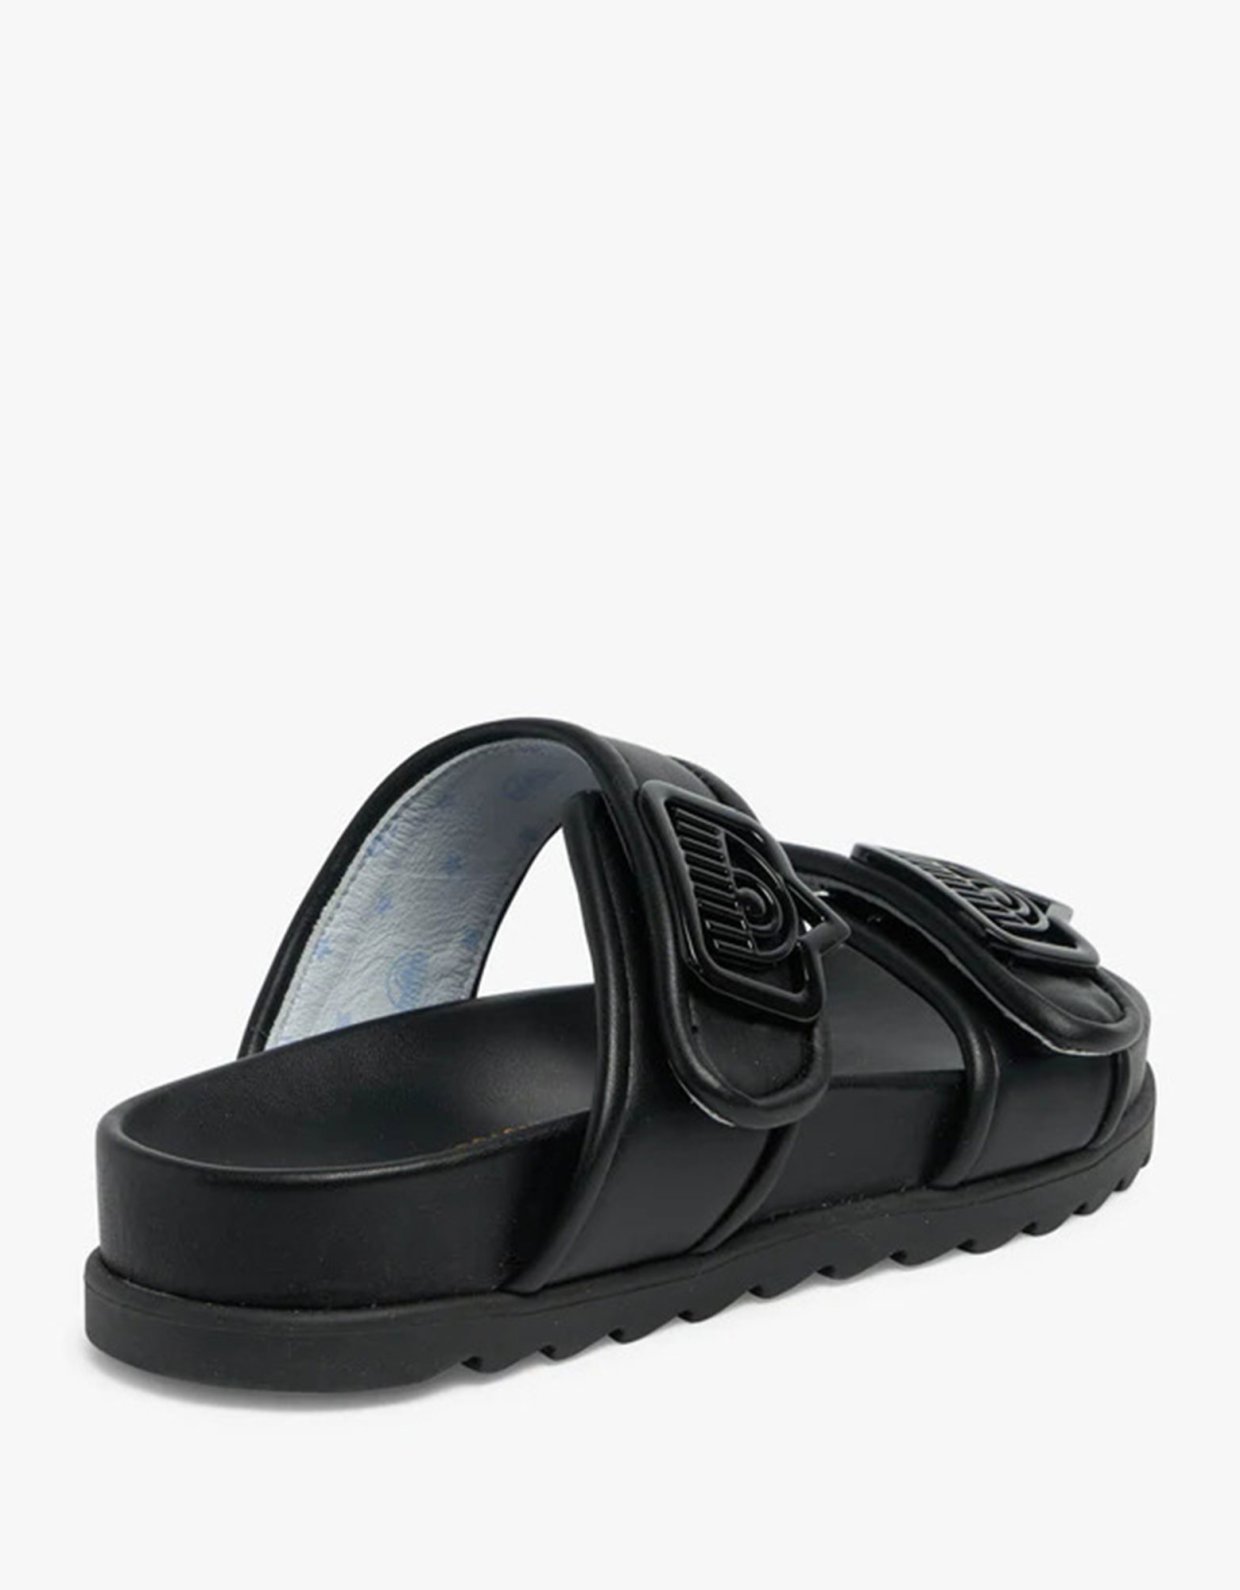 Chiara Ferragni Double strap sandal black